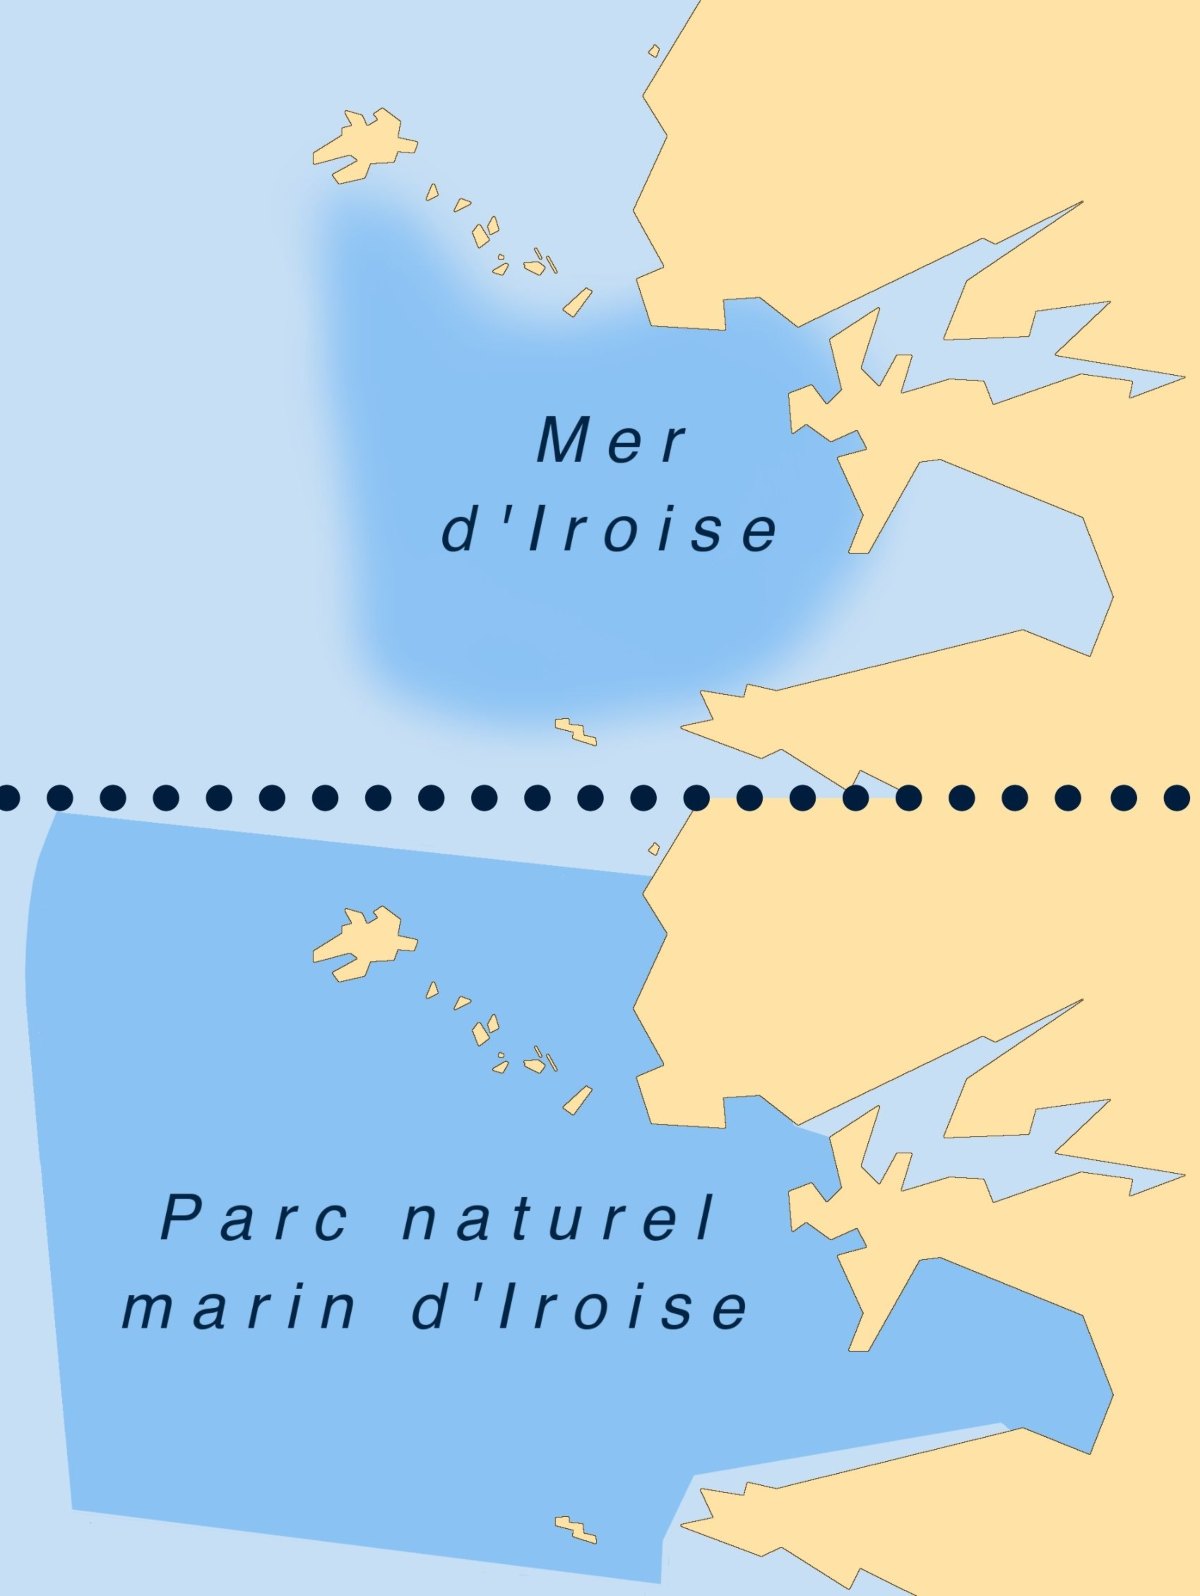 Quelle est la différence entre la mer d'iroise et le parc naturel marin d'iroise ?